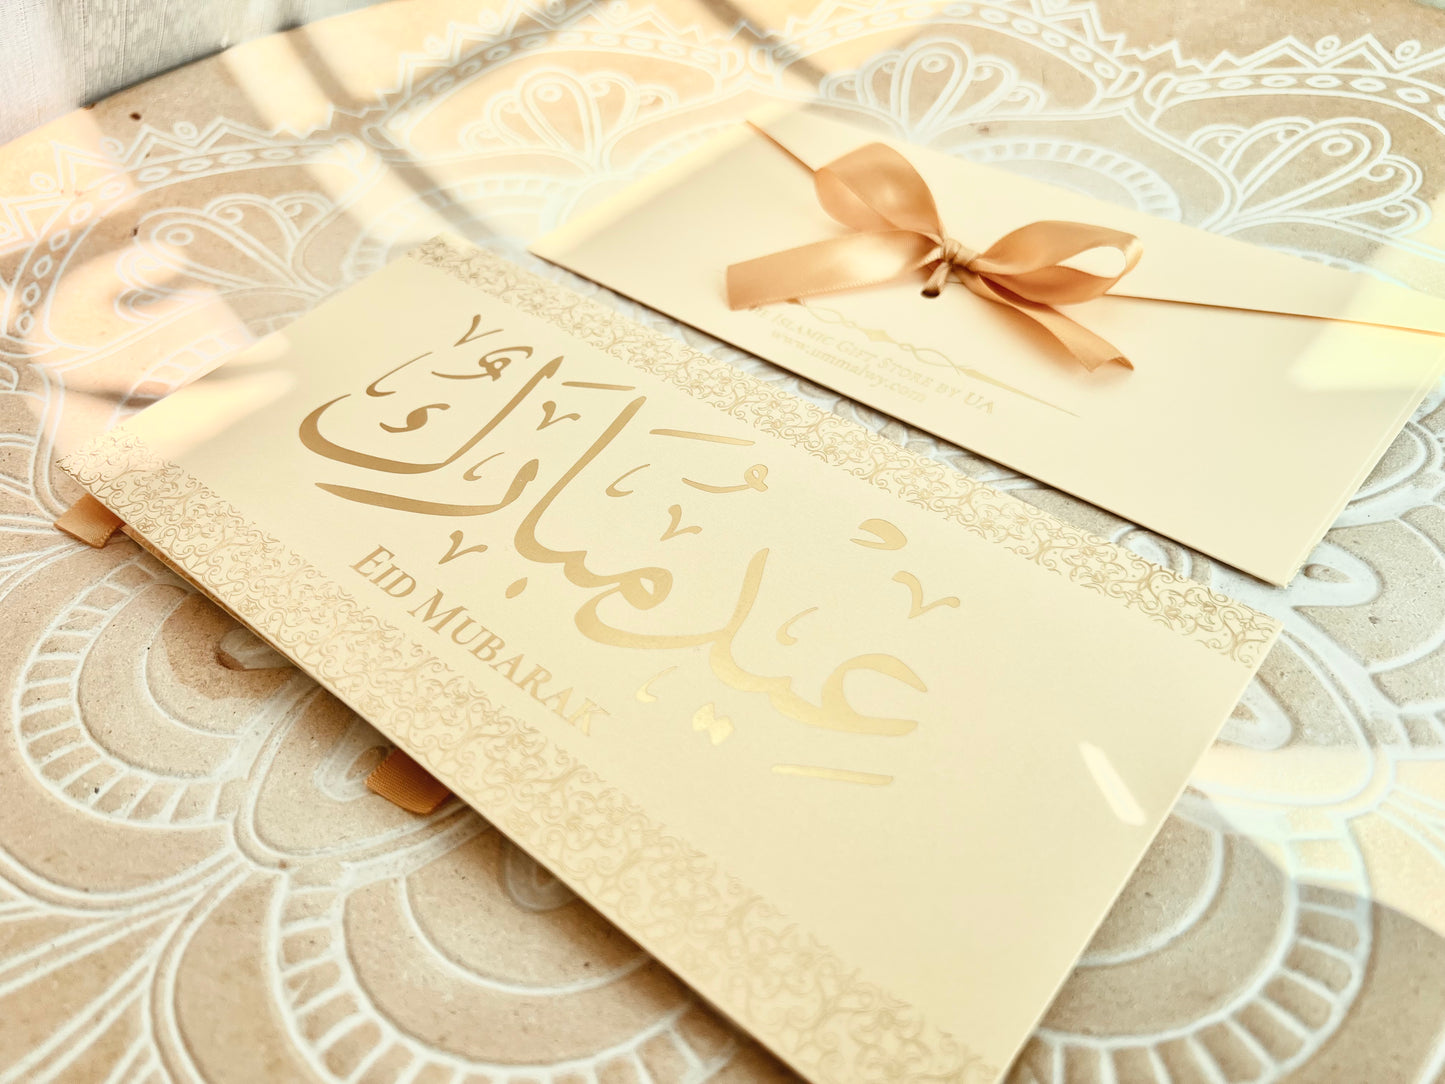 Premium Ajwa Dates al-Madinah al-Munawwarah Gift Set (500g)